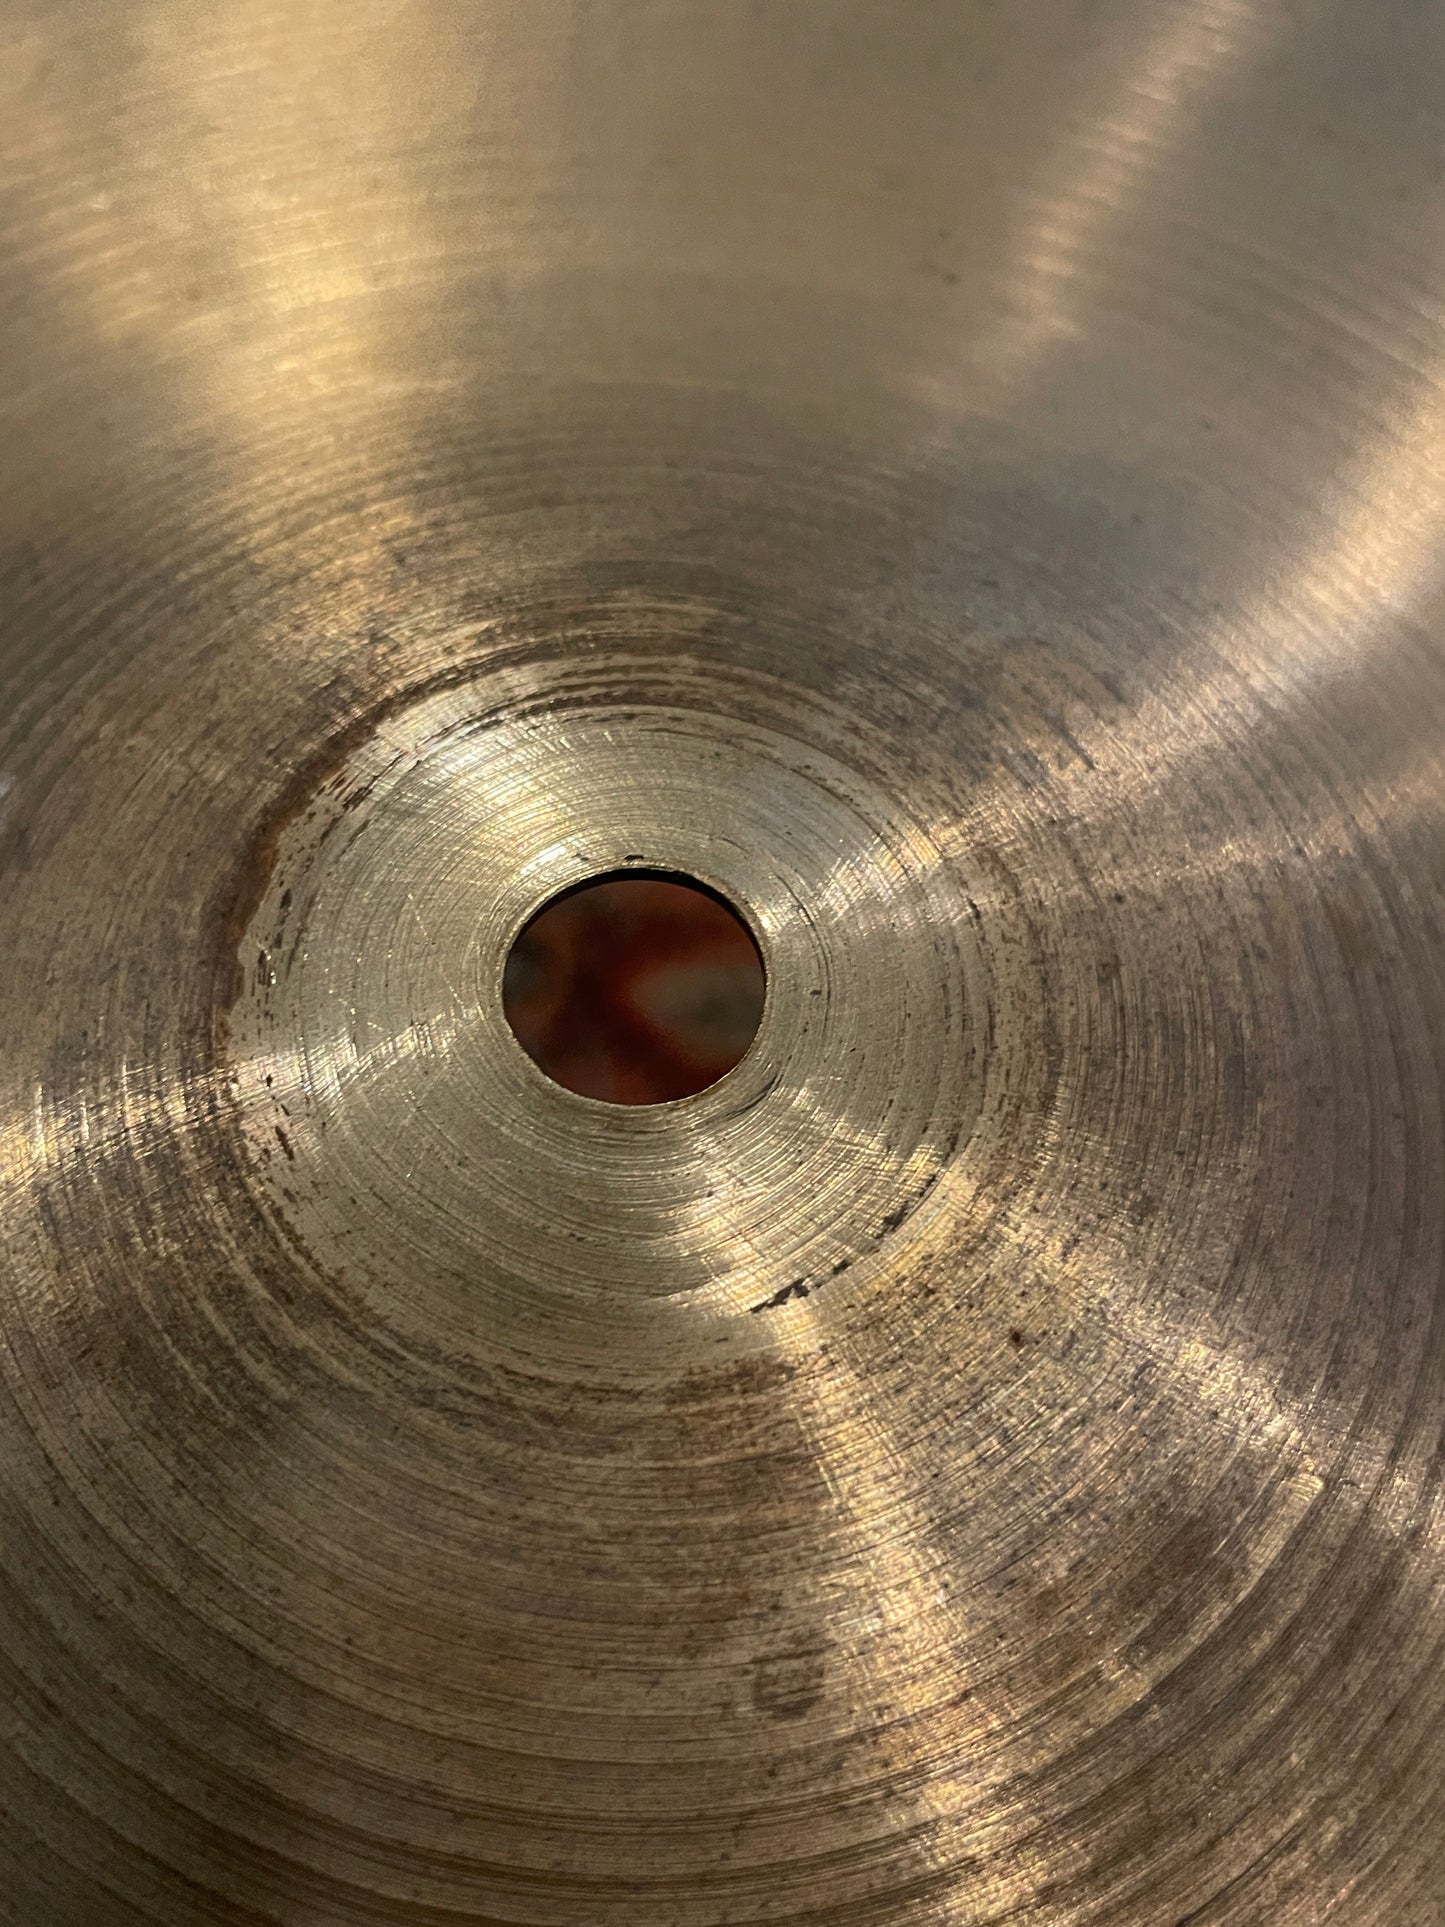 18" Zildjian A 1960s Crash Ride Cymbal w/ Factory Rivets 1680g #837